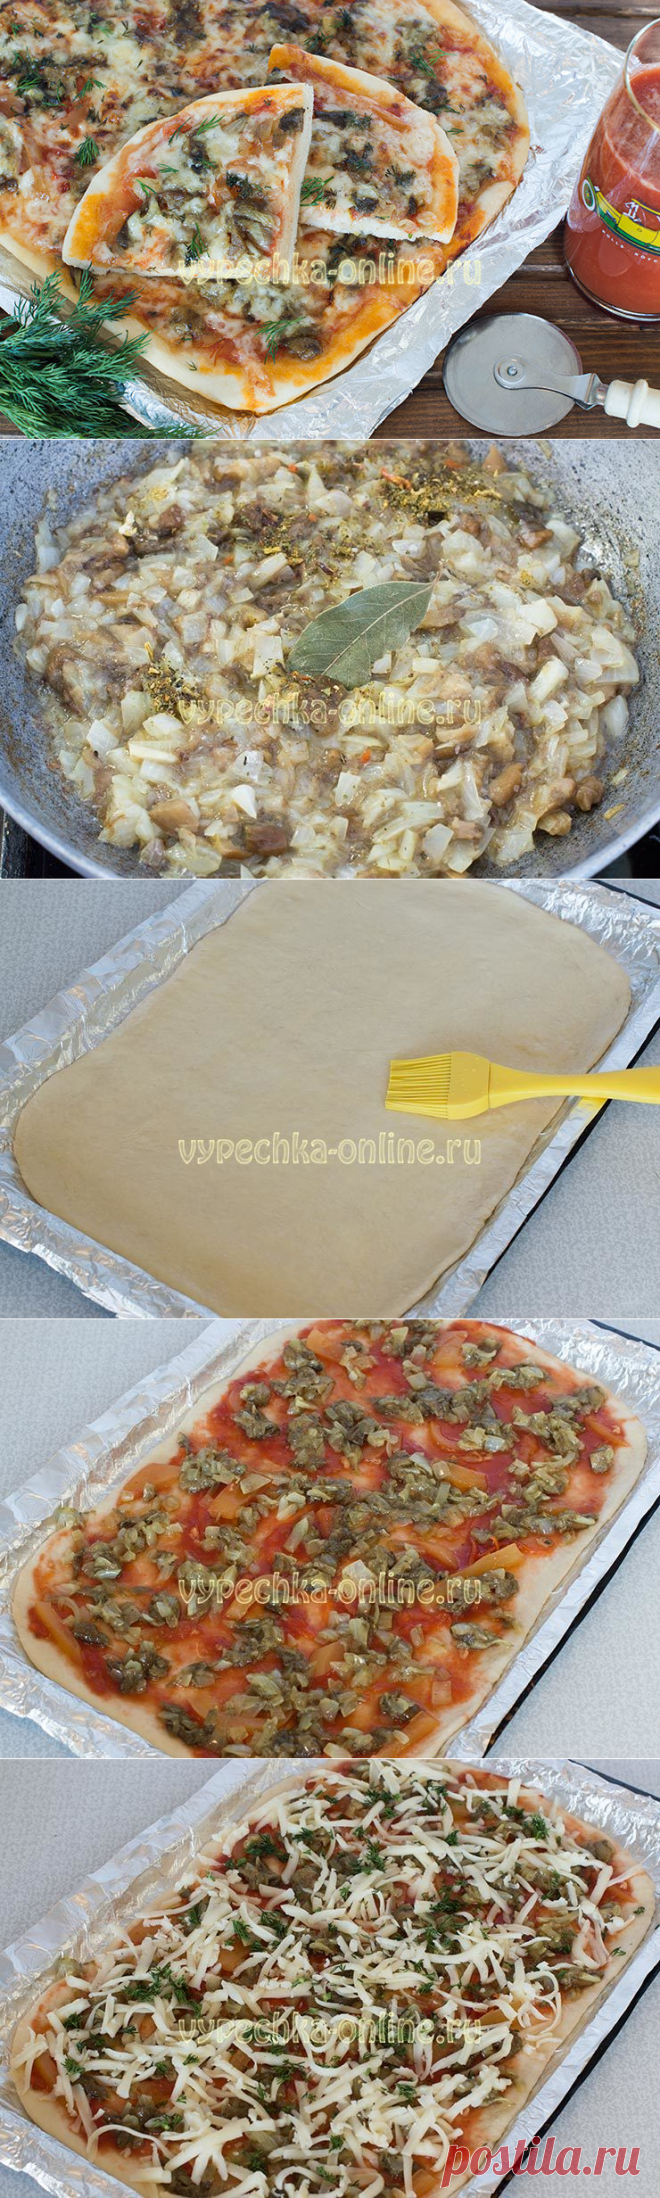 пицца грибная рецепт в домашних условиях в духовке пошаговый рецепт фото 43